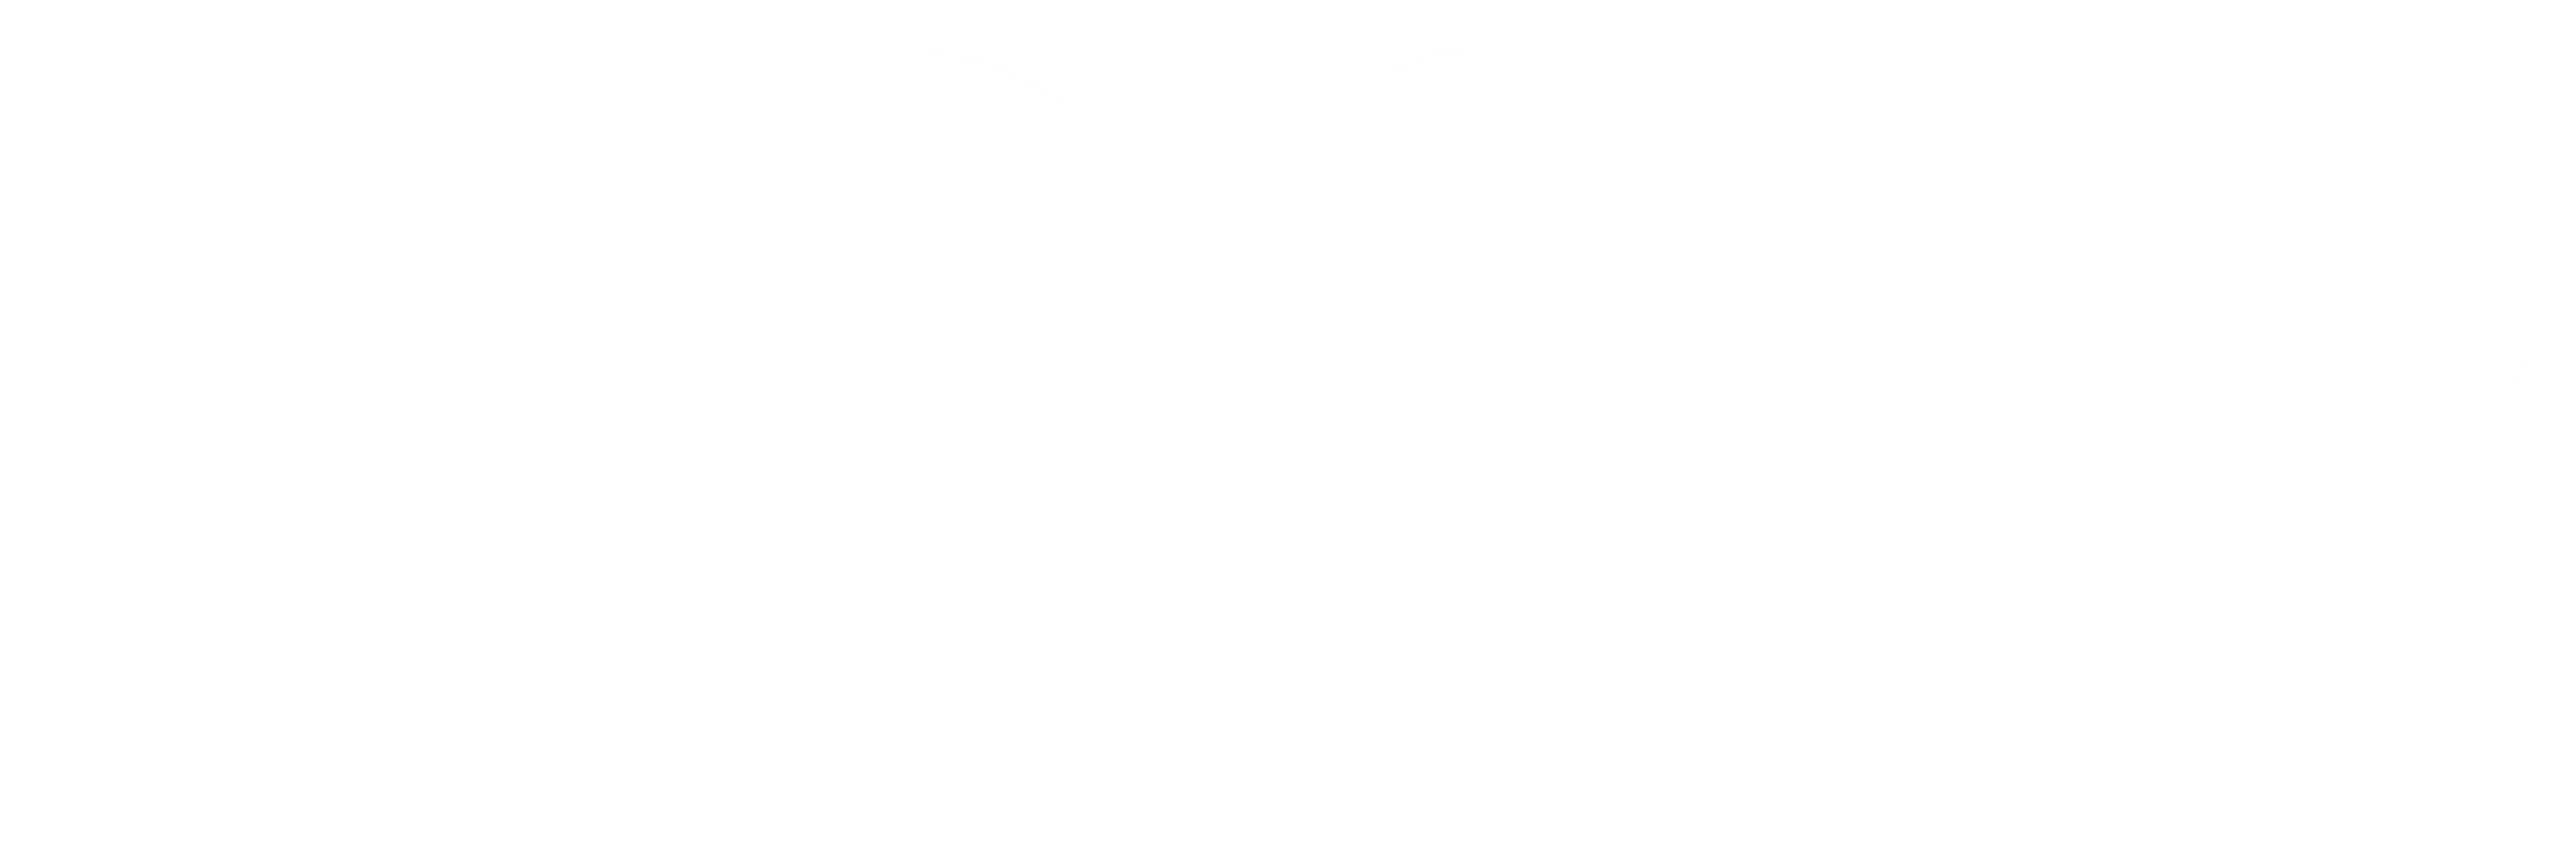 zogo logo white